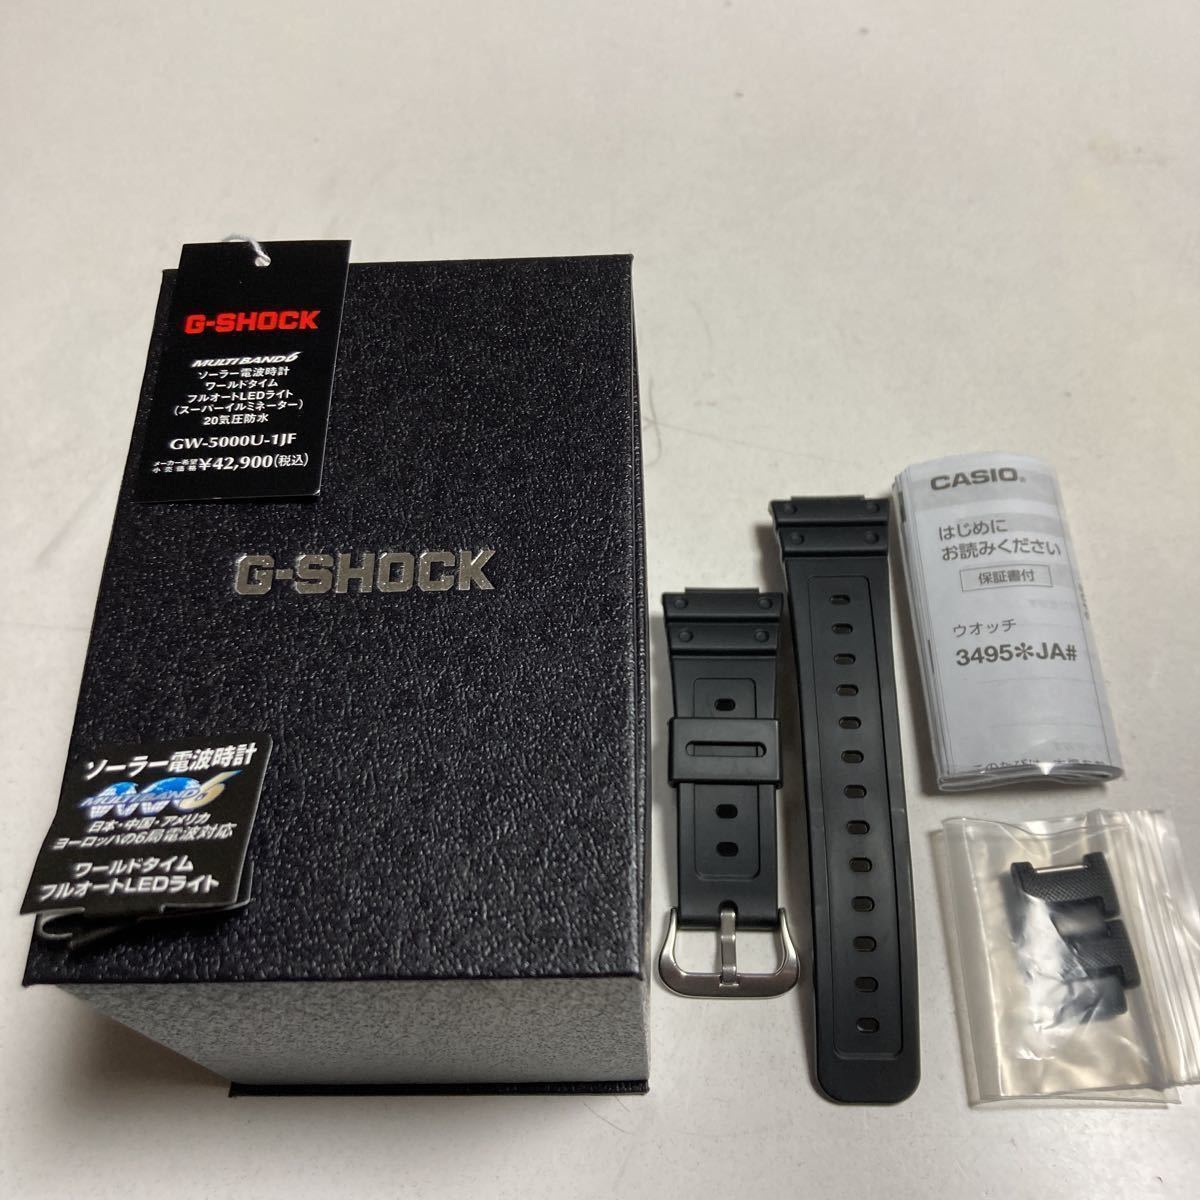 CASIO G-SHOCK GW-5000U-1JF メタルコアバンド의 상품 상세 | 야후